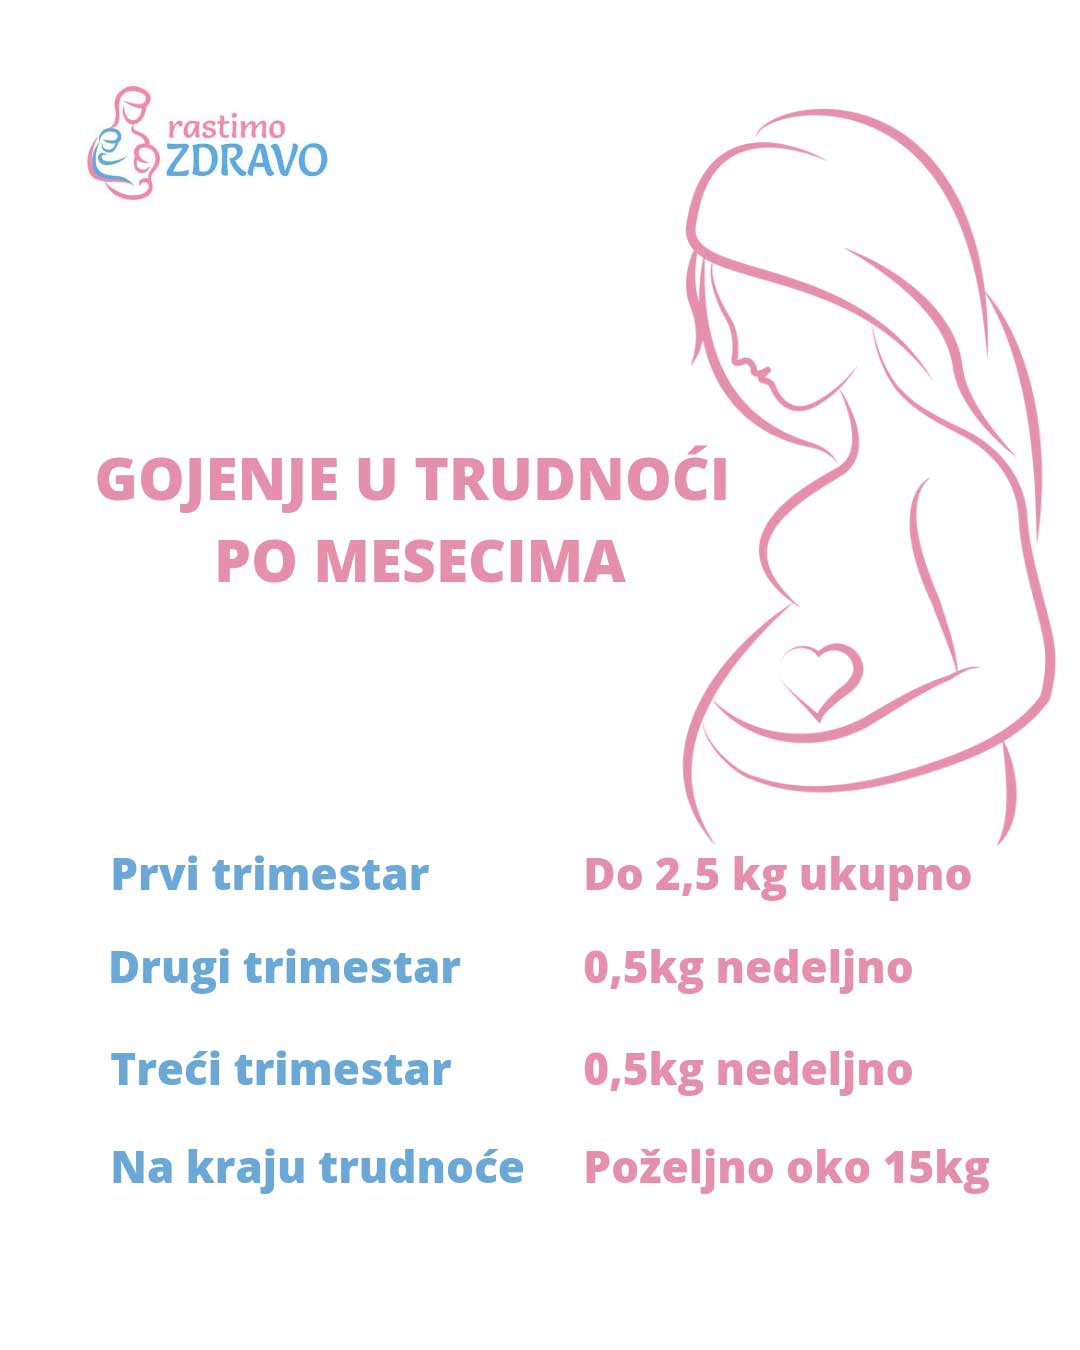 gojenje u trudnoći tabela